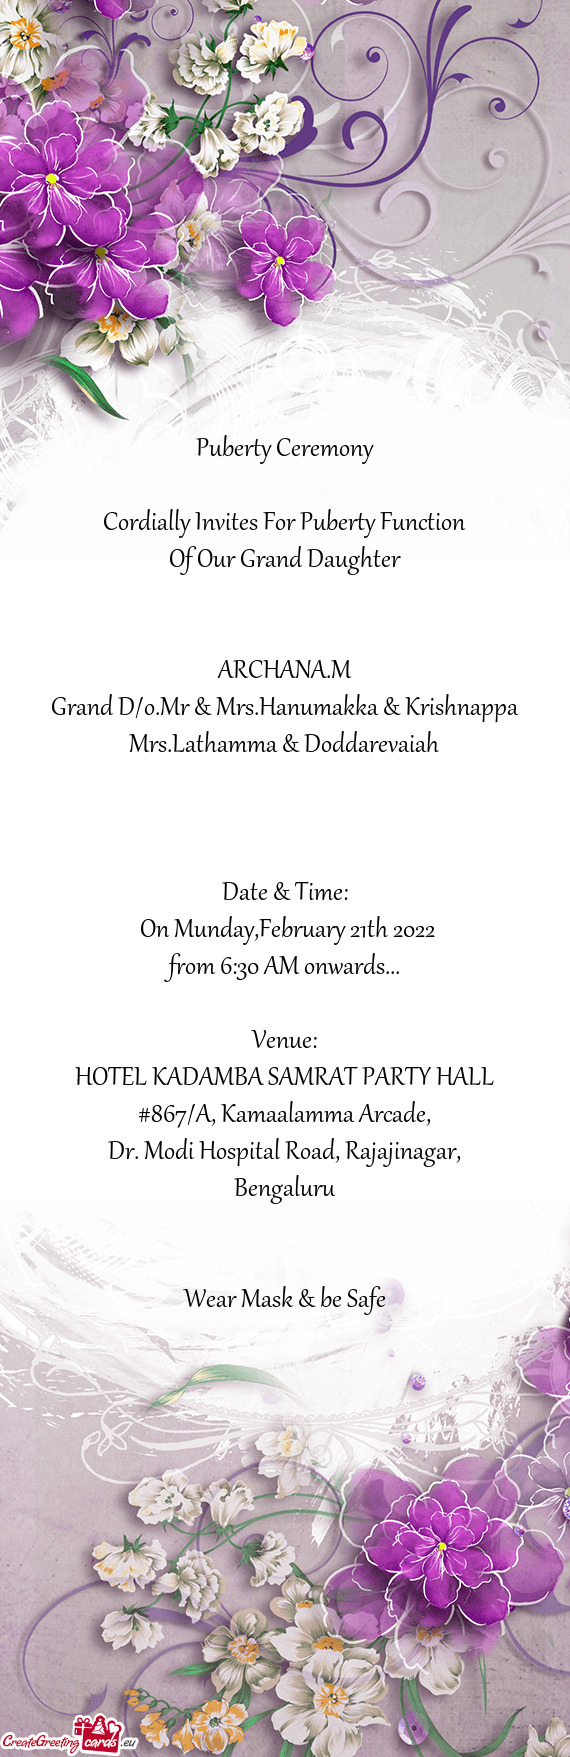 Grand D/o.Mr & Mrs.Hanumakka & Krishnappa